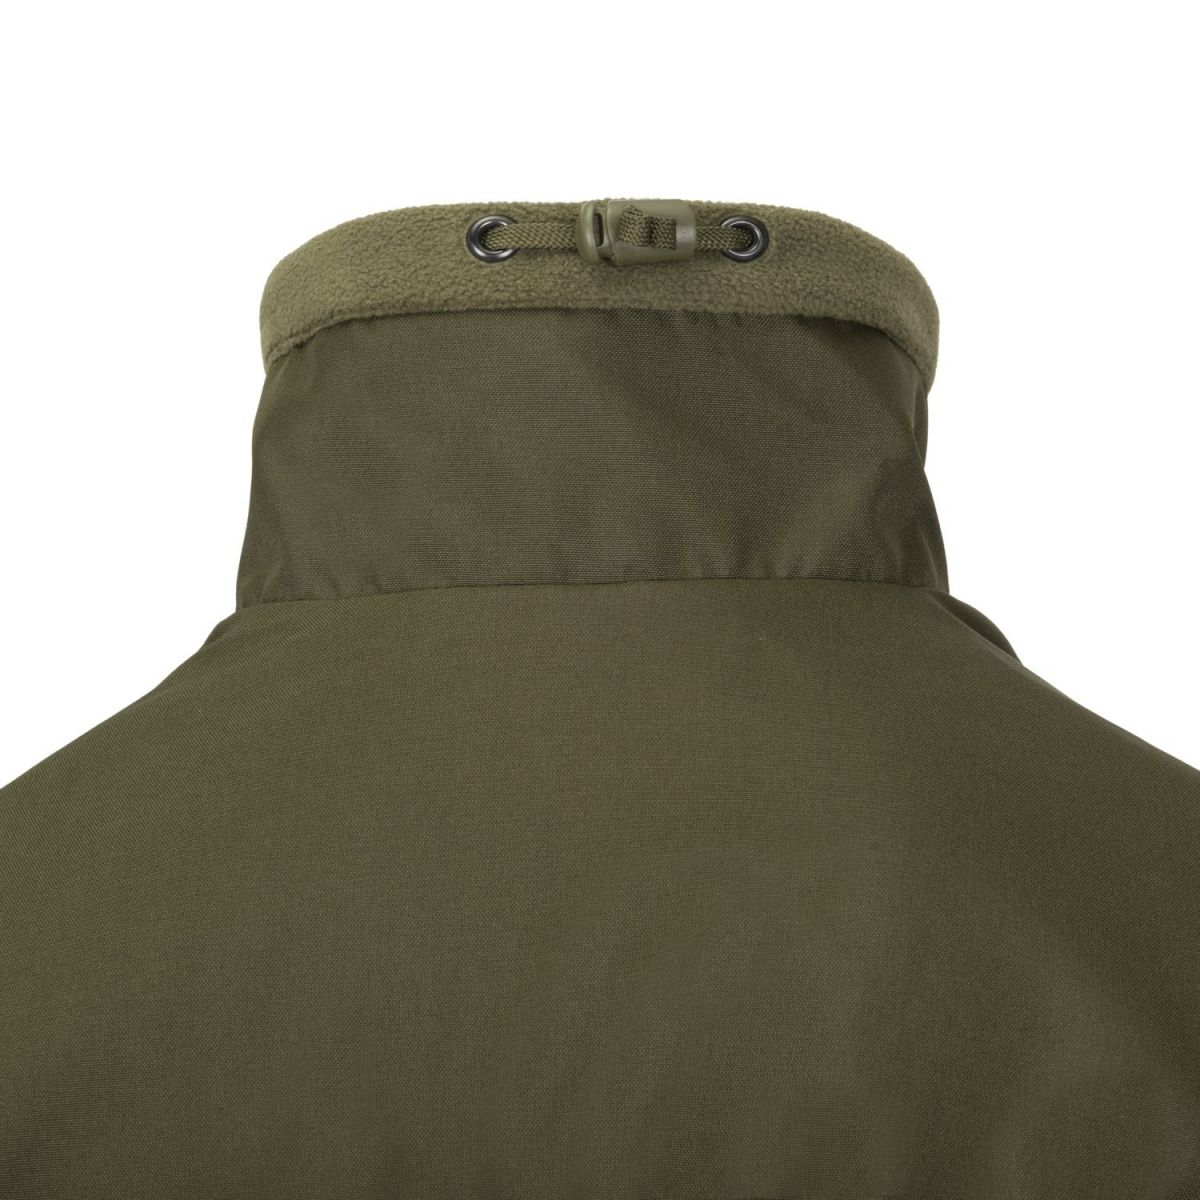 Флісова куртка Helikon-Tex Classic Army. Колір Olive Green / Зелена олива. Розмір S 13